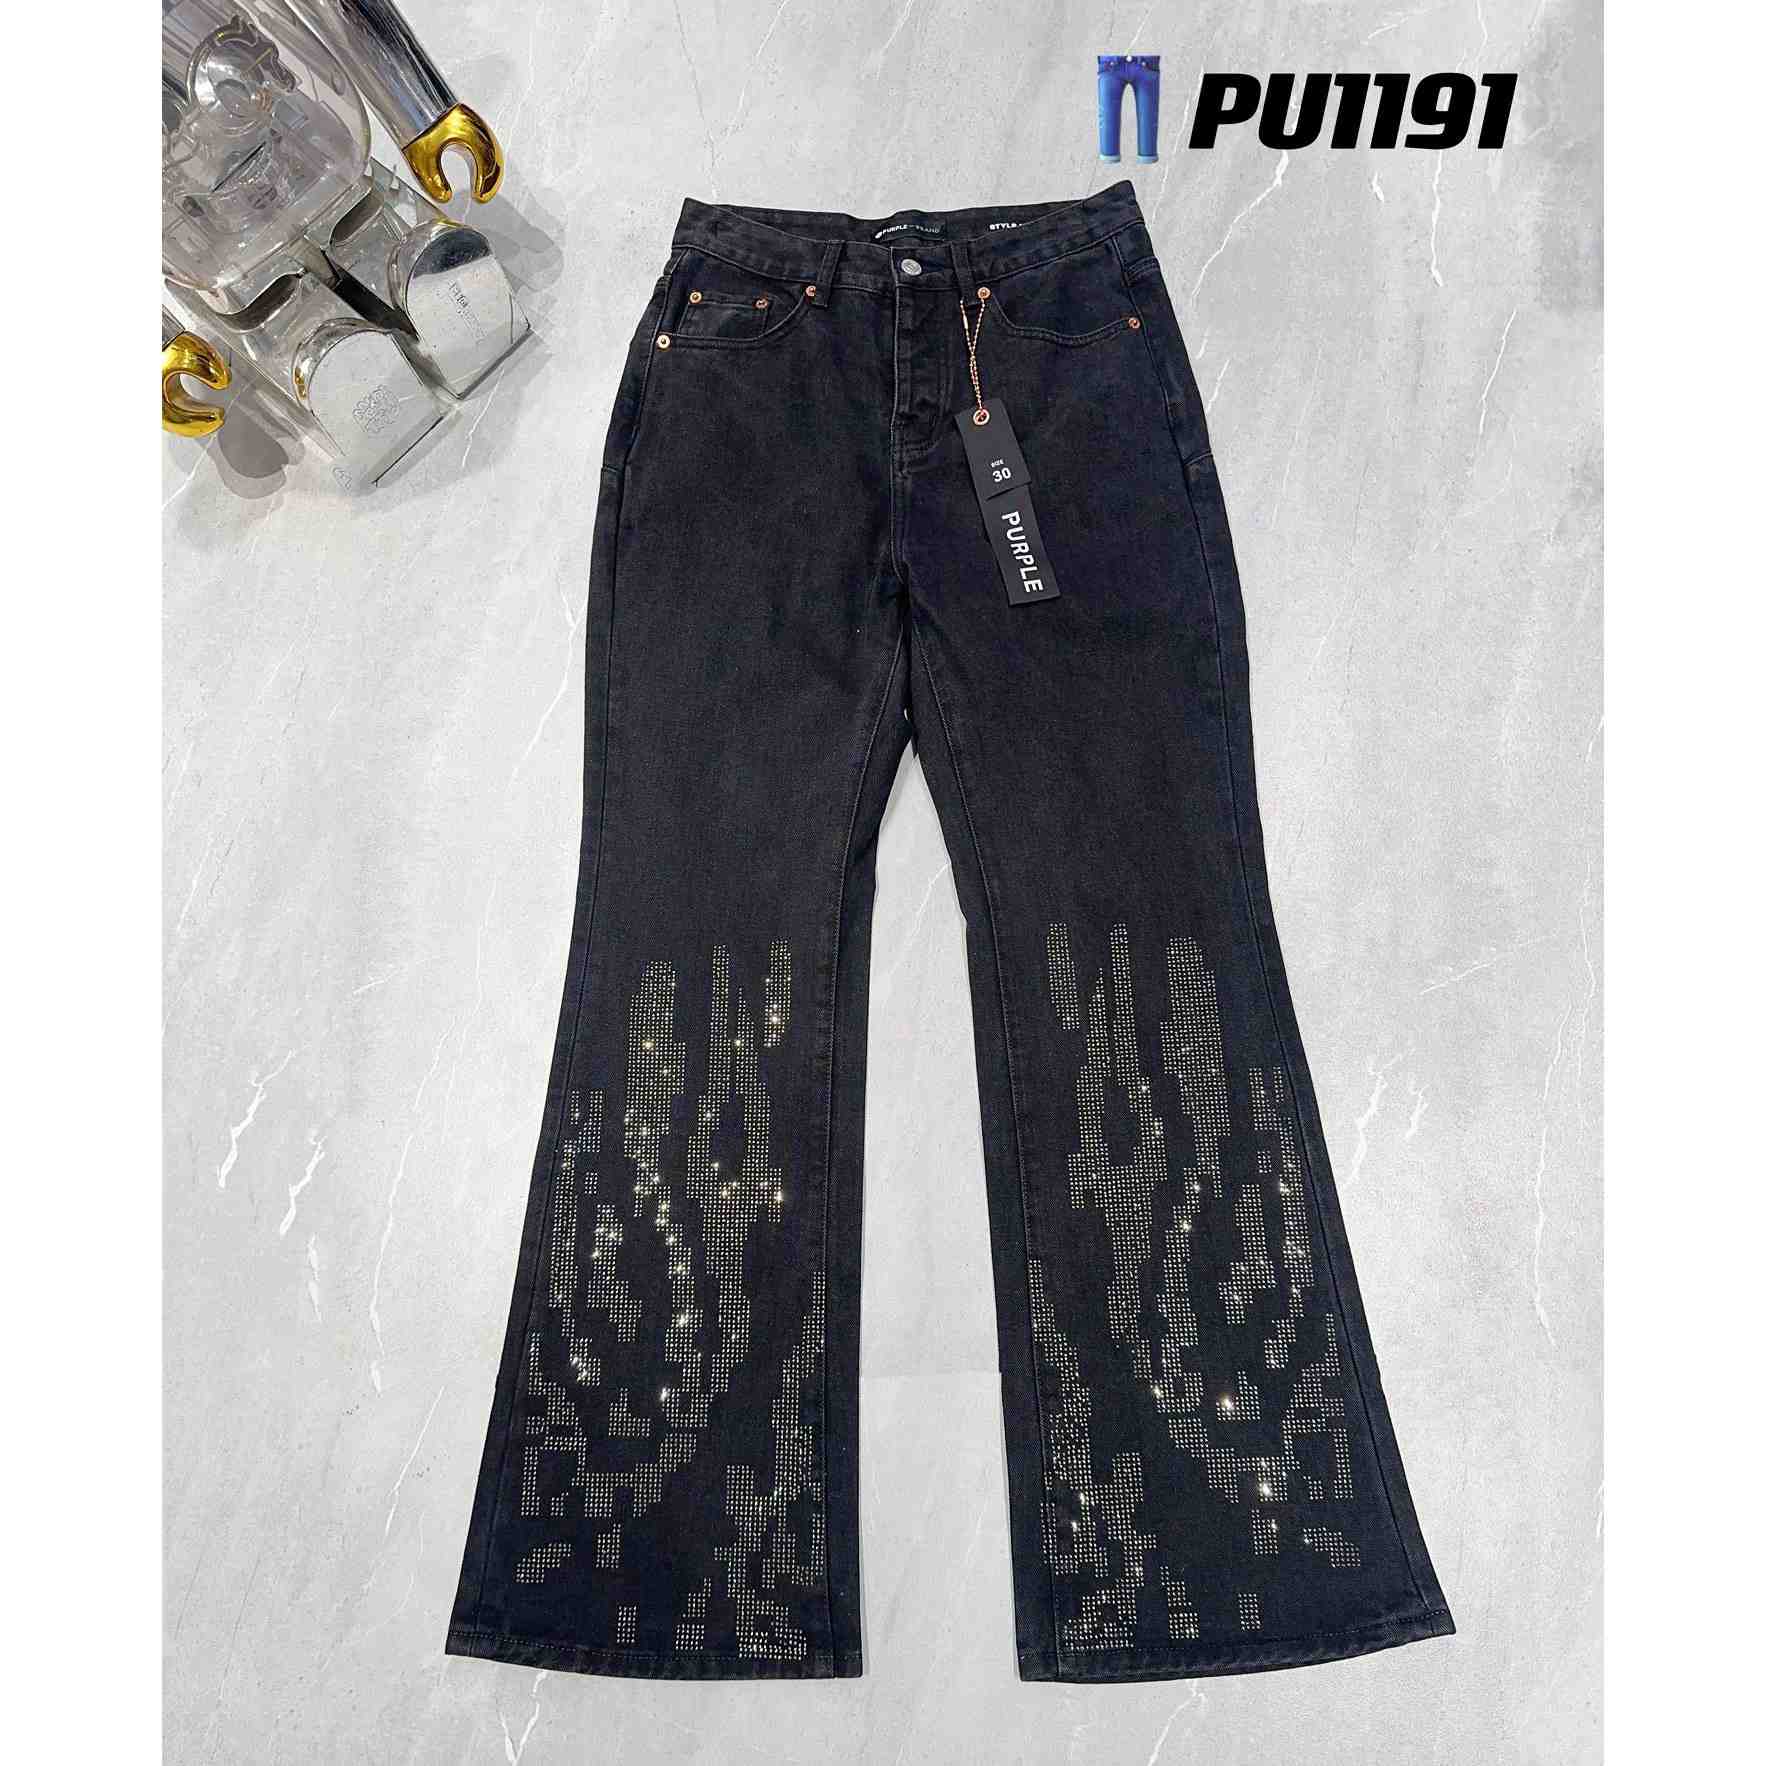 Purple-Brand Jeans   PU1191 - DesignerGu